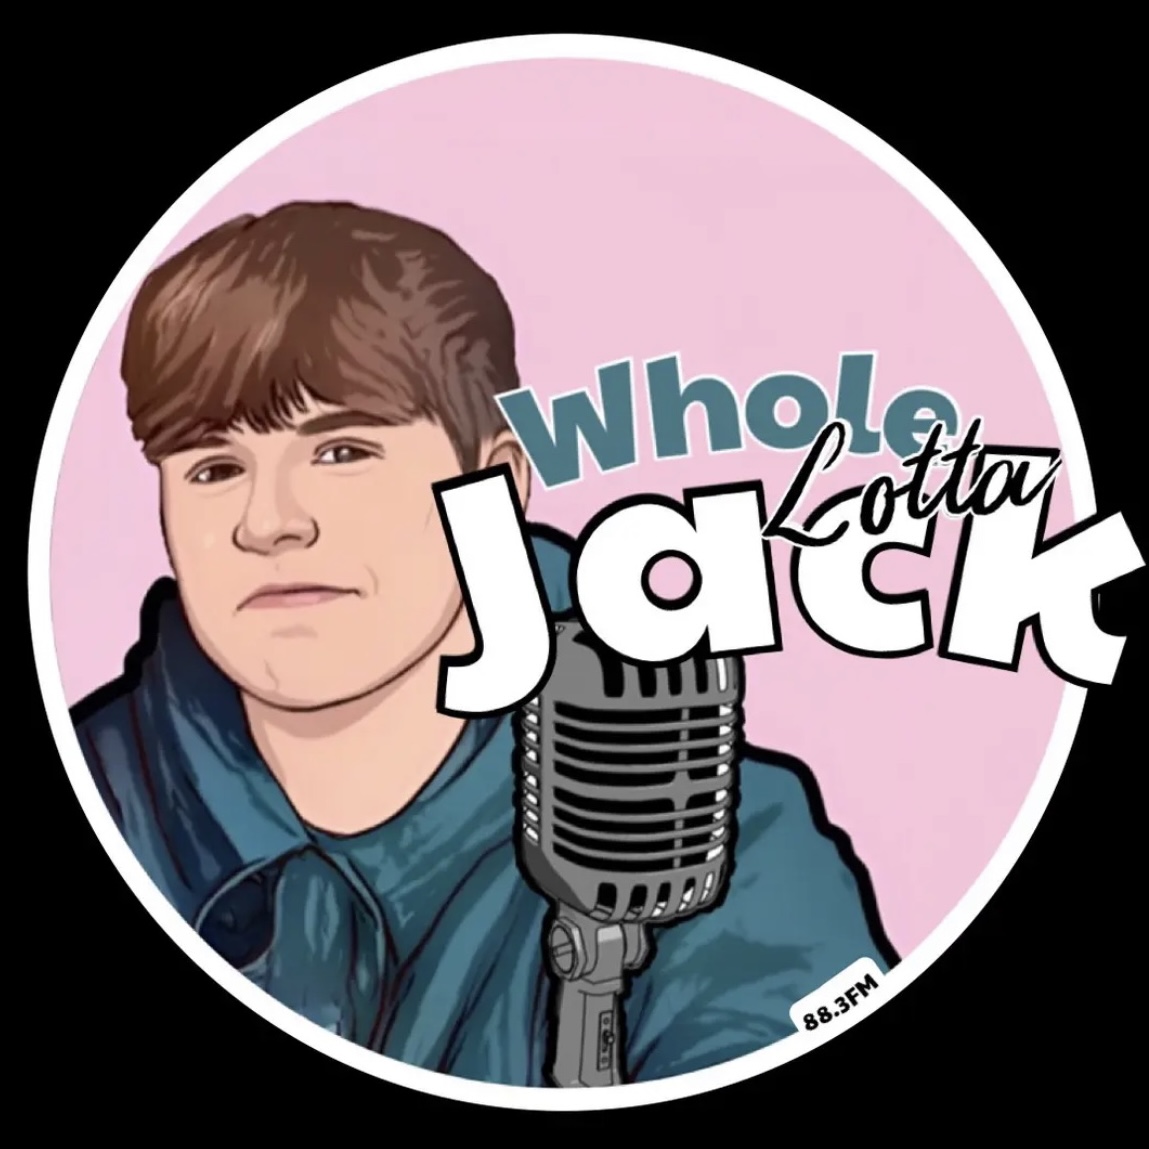 Whole Lotta’ Jack logo.